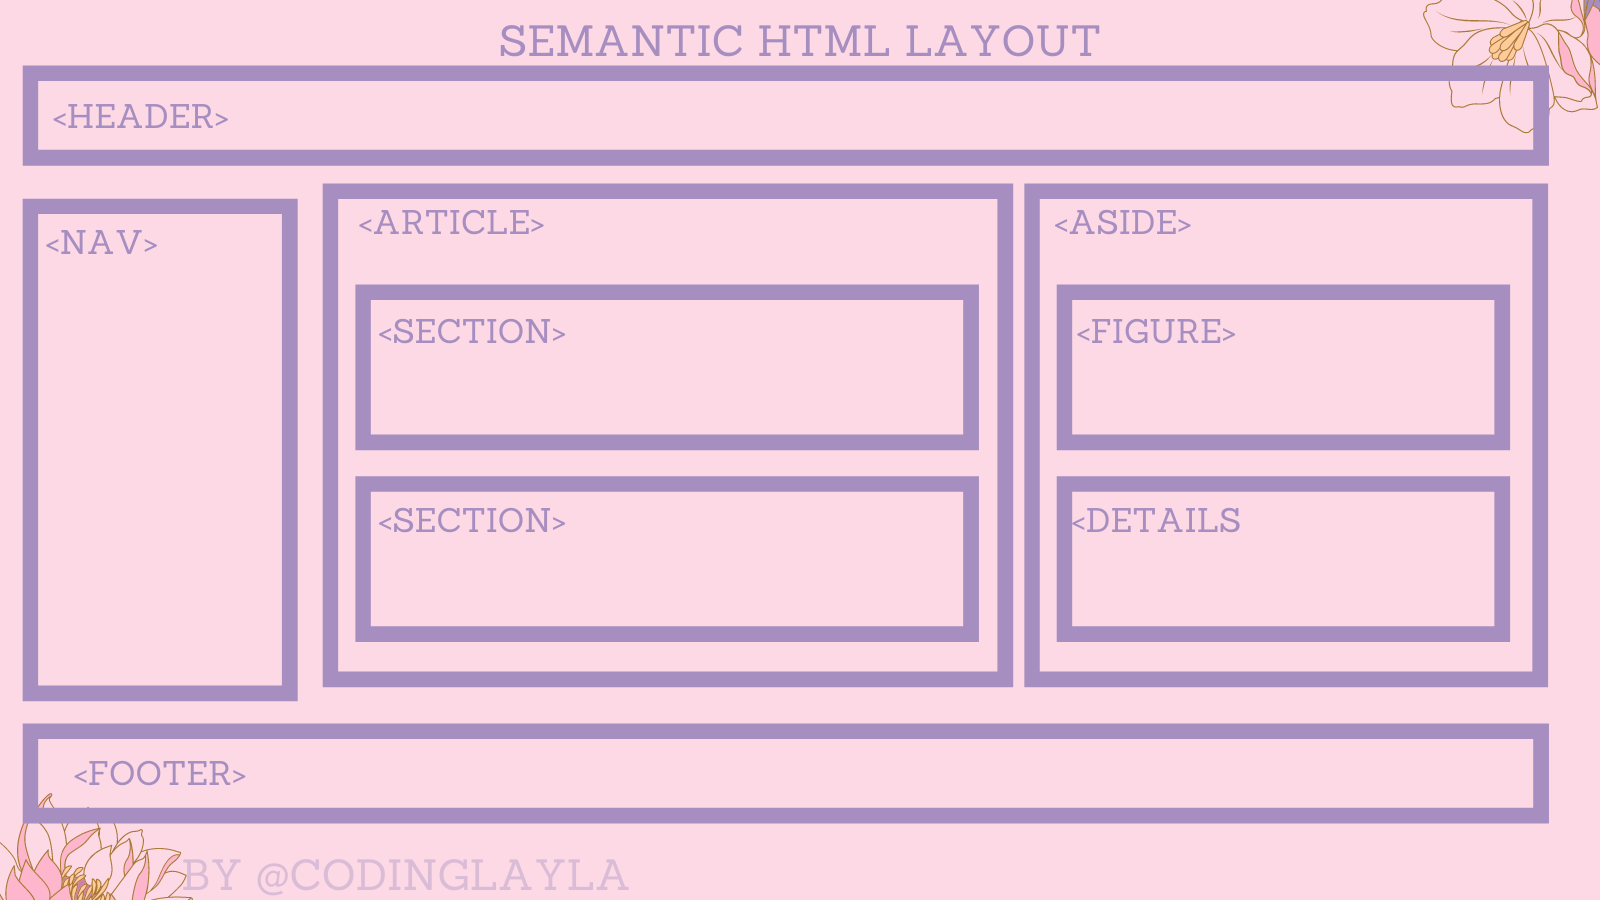 html semantics.png